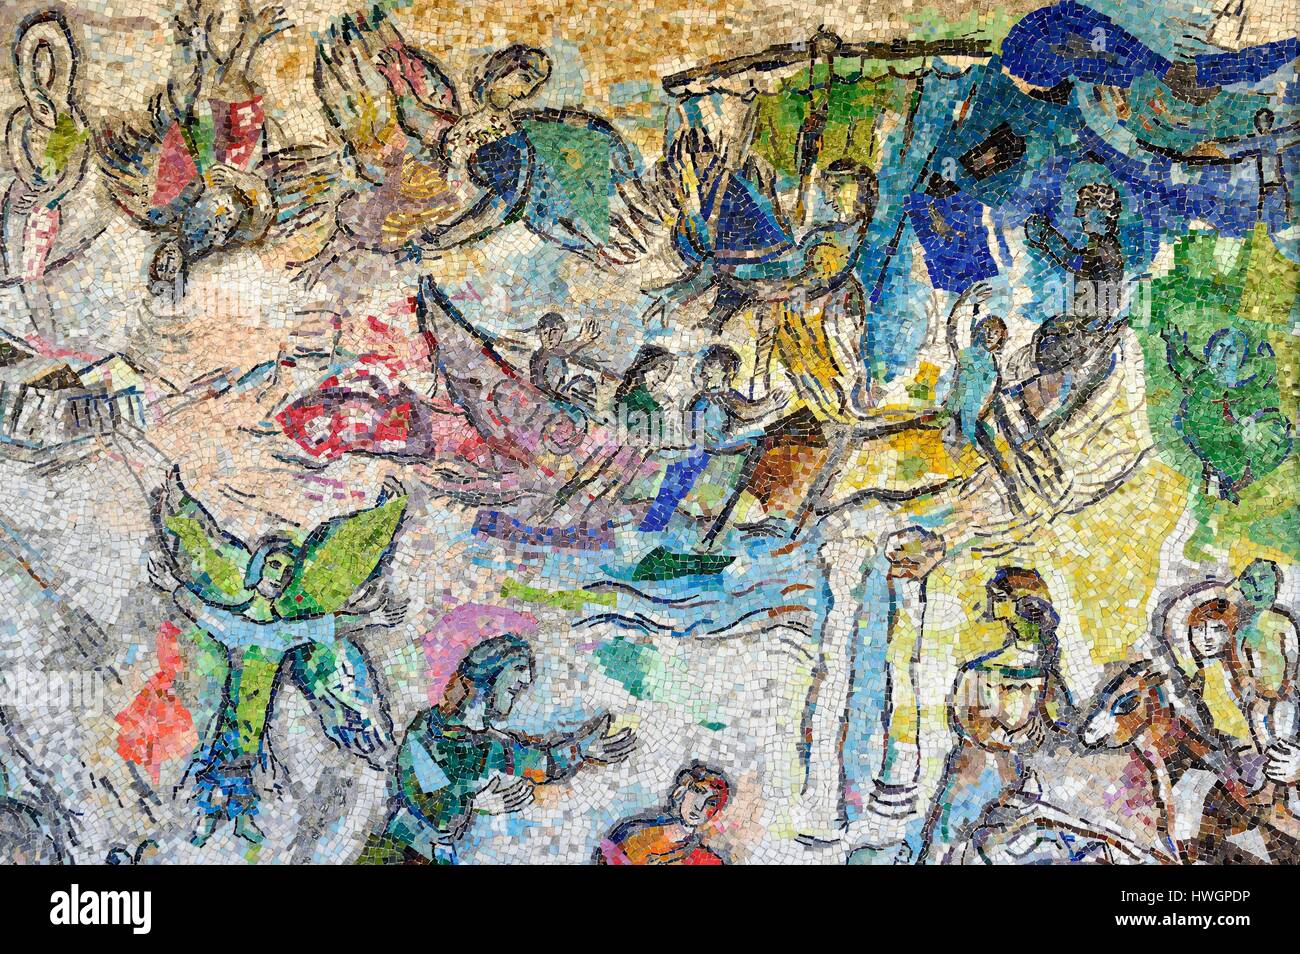 Francia, Alpes Maritimes, Nizza, Università di Nizza Sophia Antipolis, sala di attesa della Facoltà di Legge andPolitical Science (Trotabas Campus), il messaggio di Ulisse, mosaico murale di Marc Chagall Foto Stock